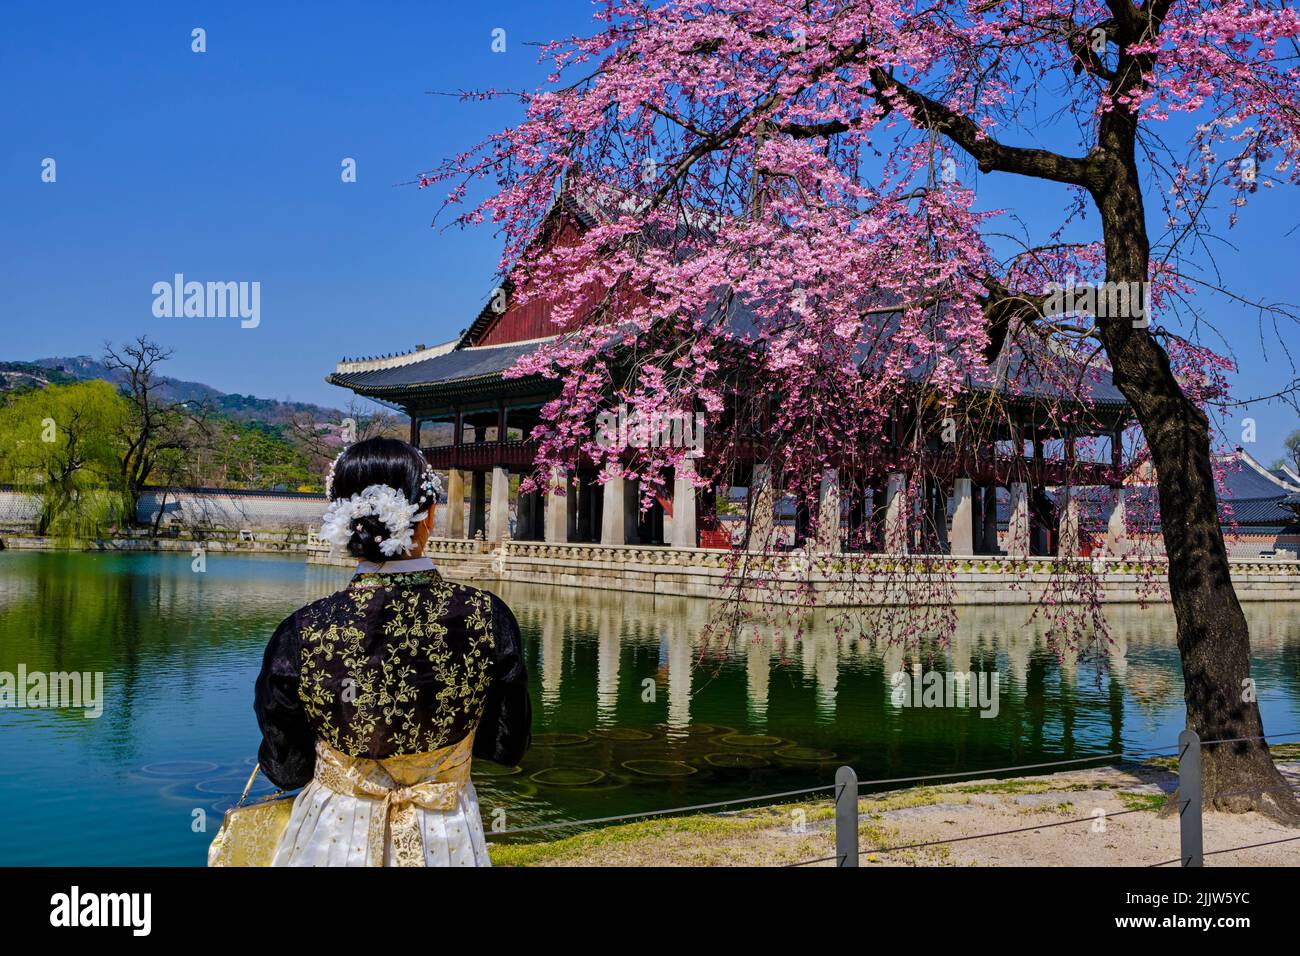 Corea del Sur, Seúl, distrito de Jongno-gu, Palacio Gyeongbokgung o Palacio Gyeongbok que significa Palacio de la resplandeciente felicidad, los turistas en los lugares tradicionales Foto de stock